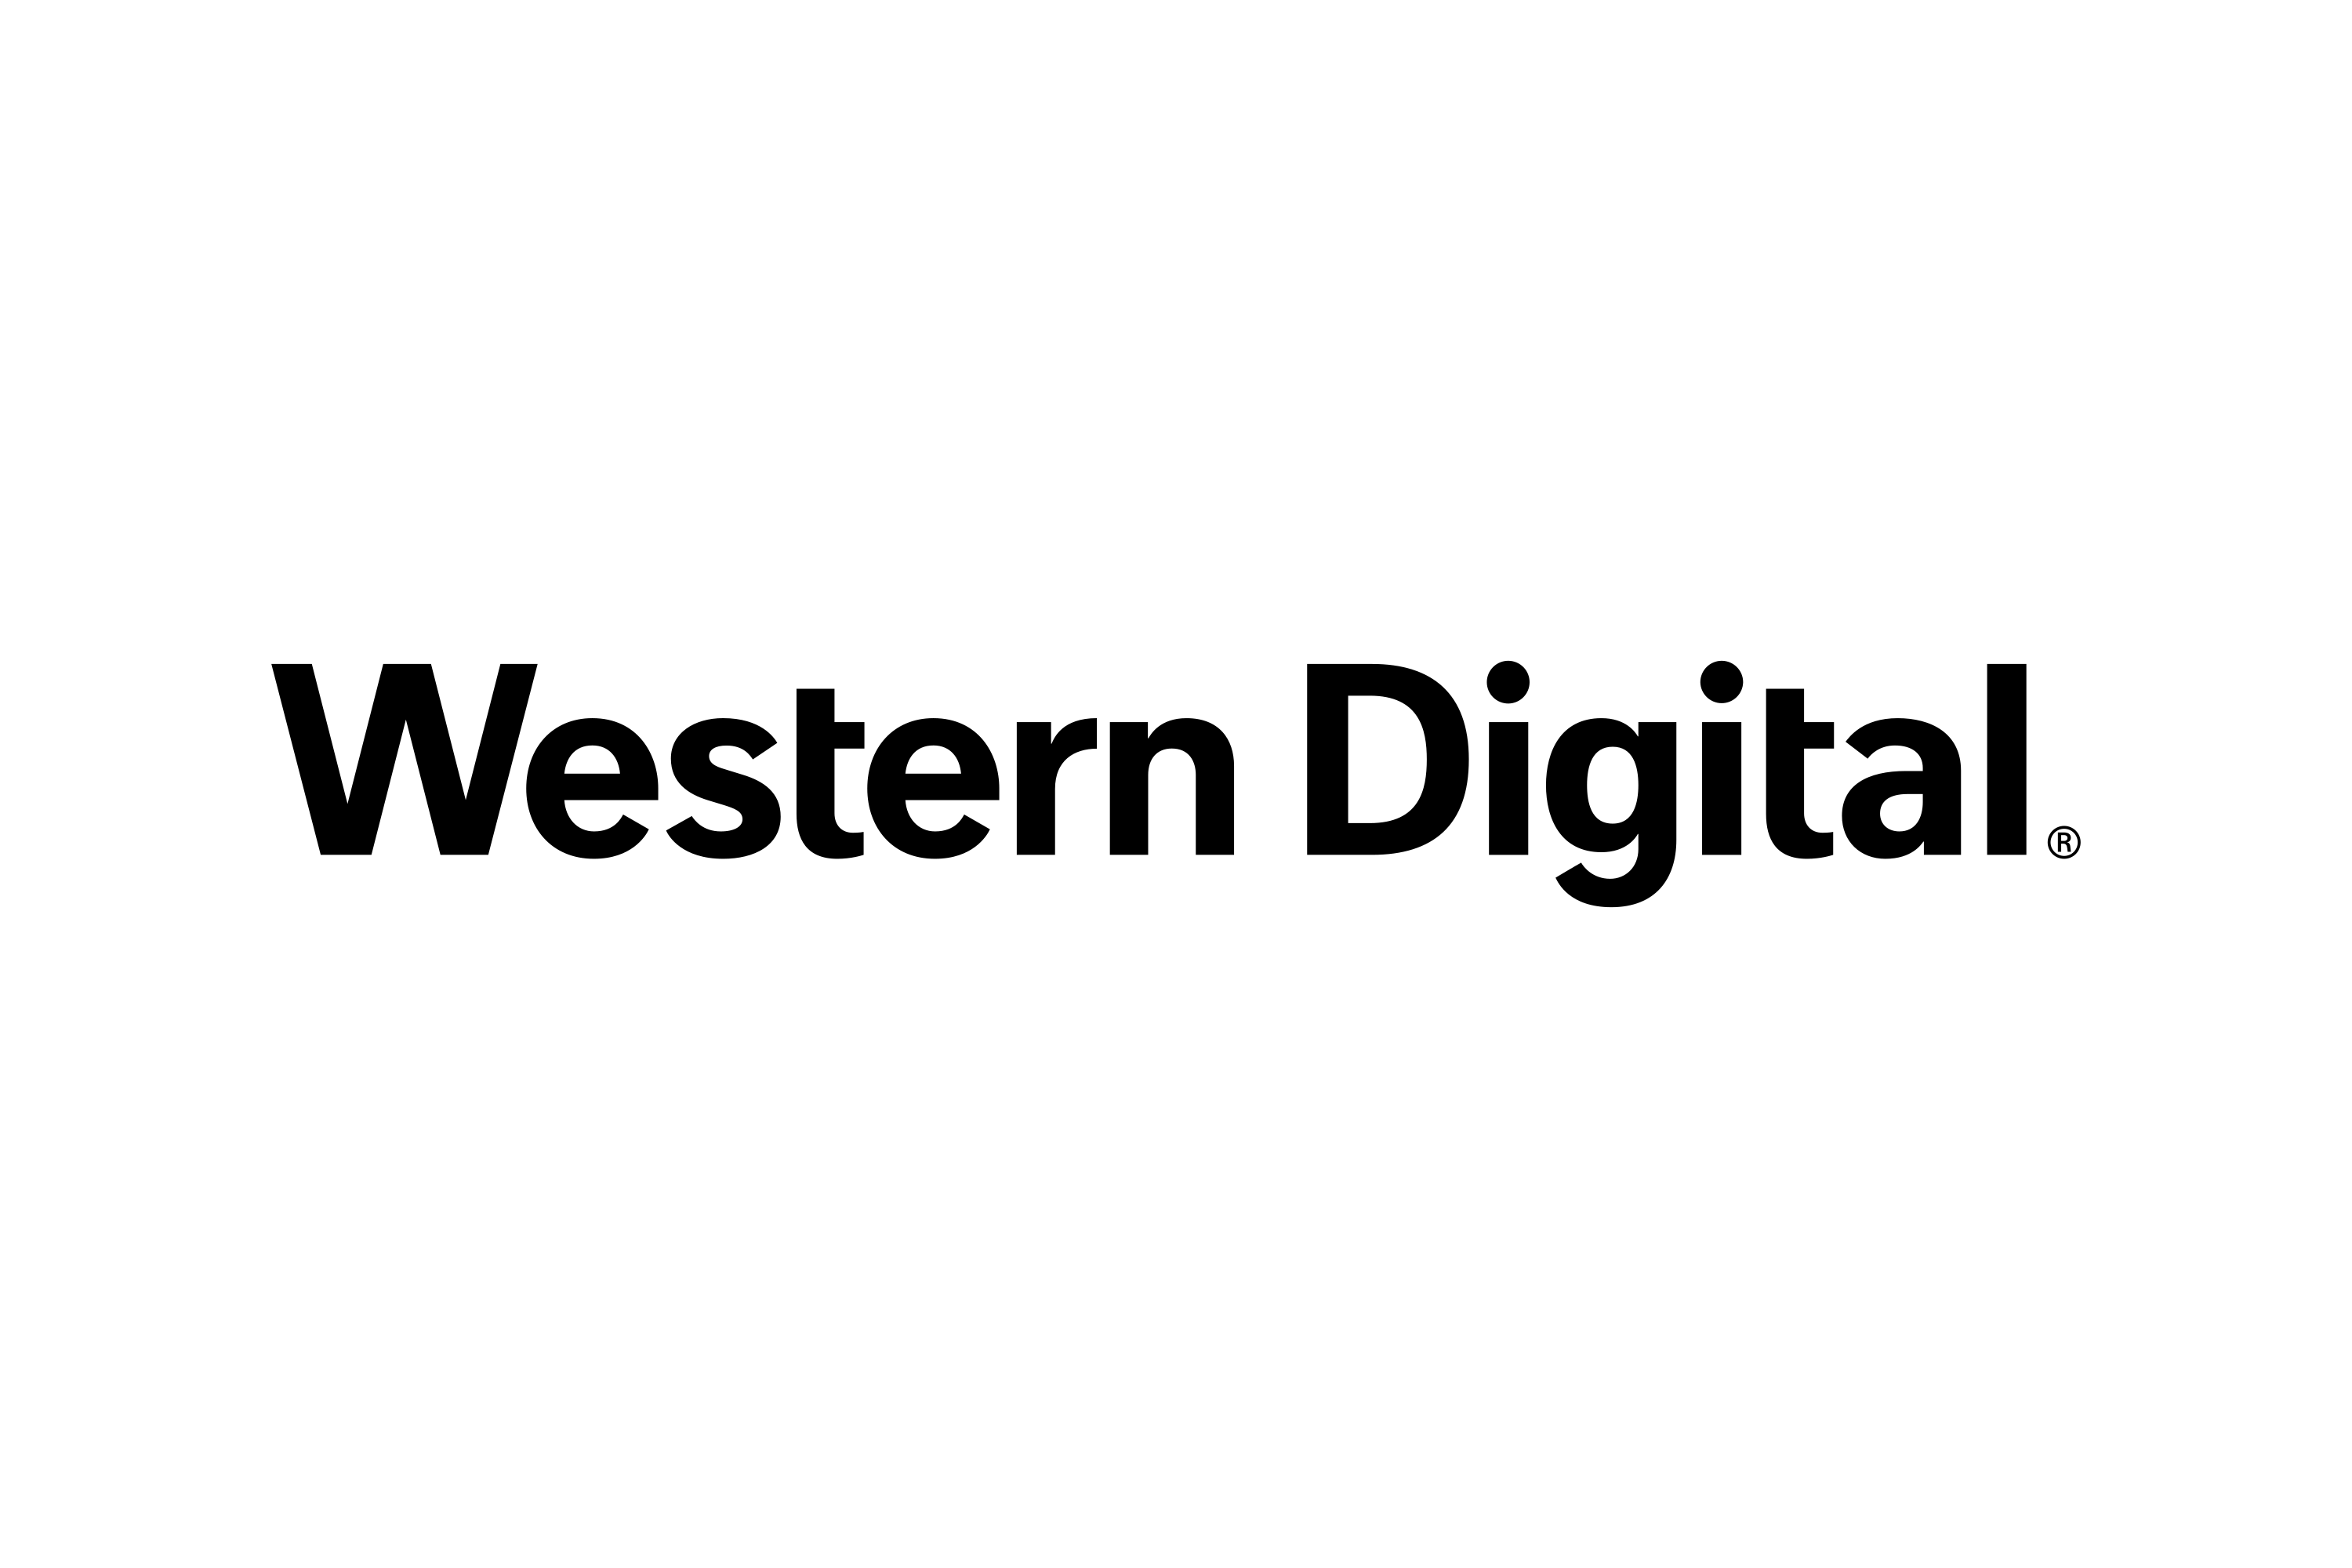 Download Western Digital Wd Logo In Svg Vector Or Png File Format Logo Wine